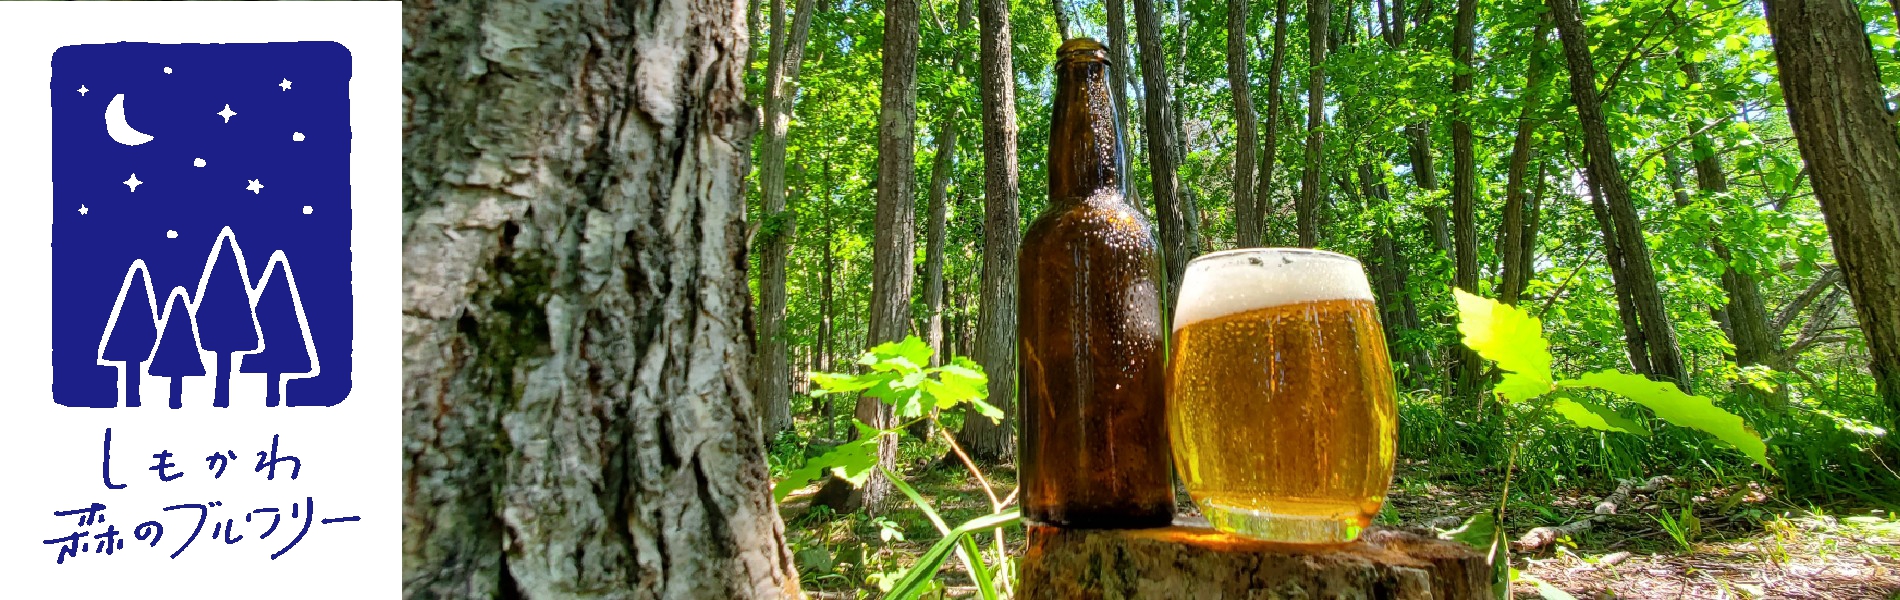 森林に囲まれた１杯のビール